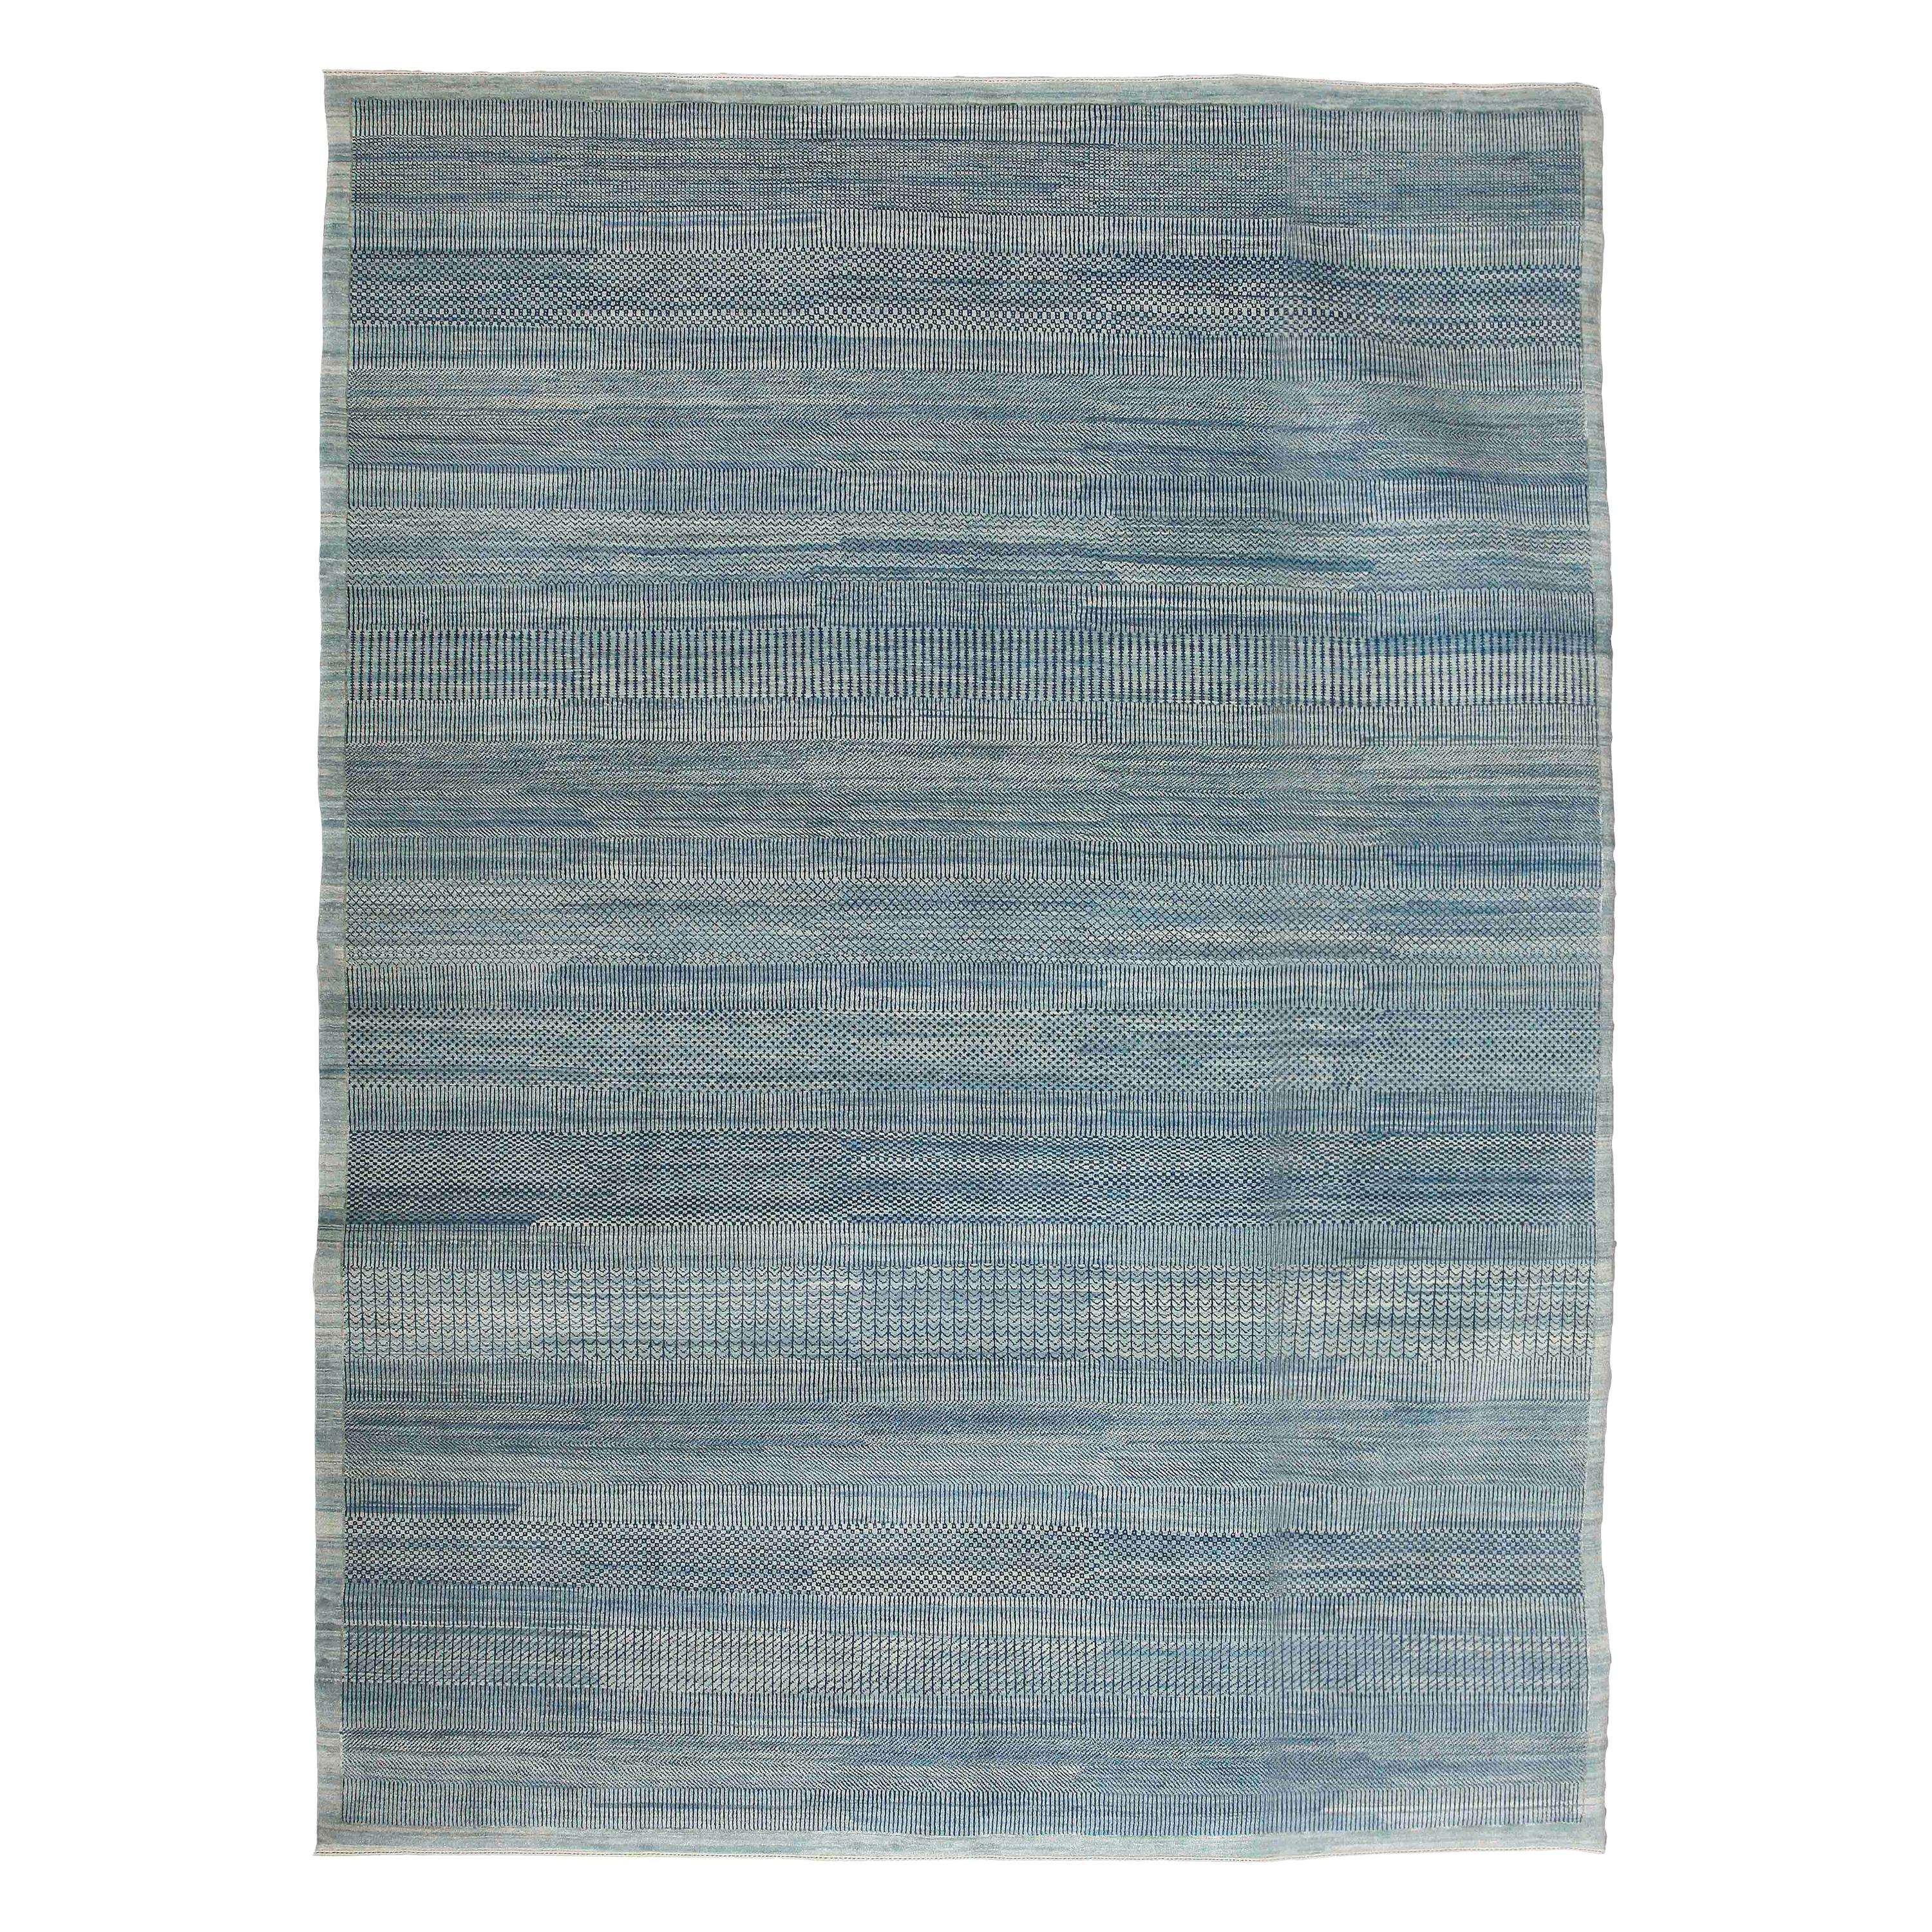 Orley Shabahang “Rain” Contemporary Persian Rug, Blue, 9’ x 12’